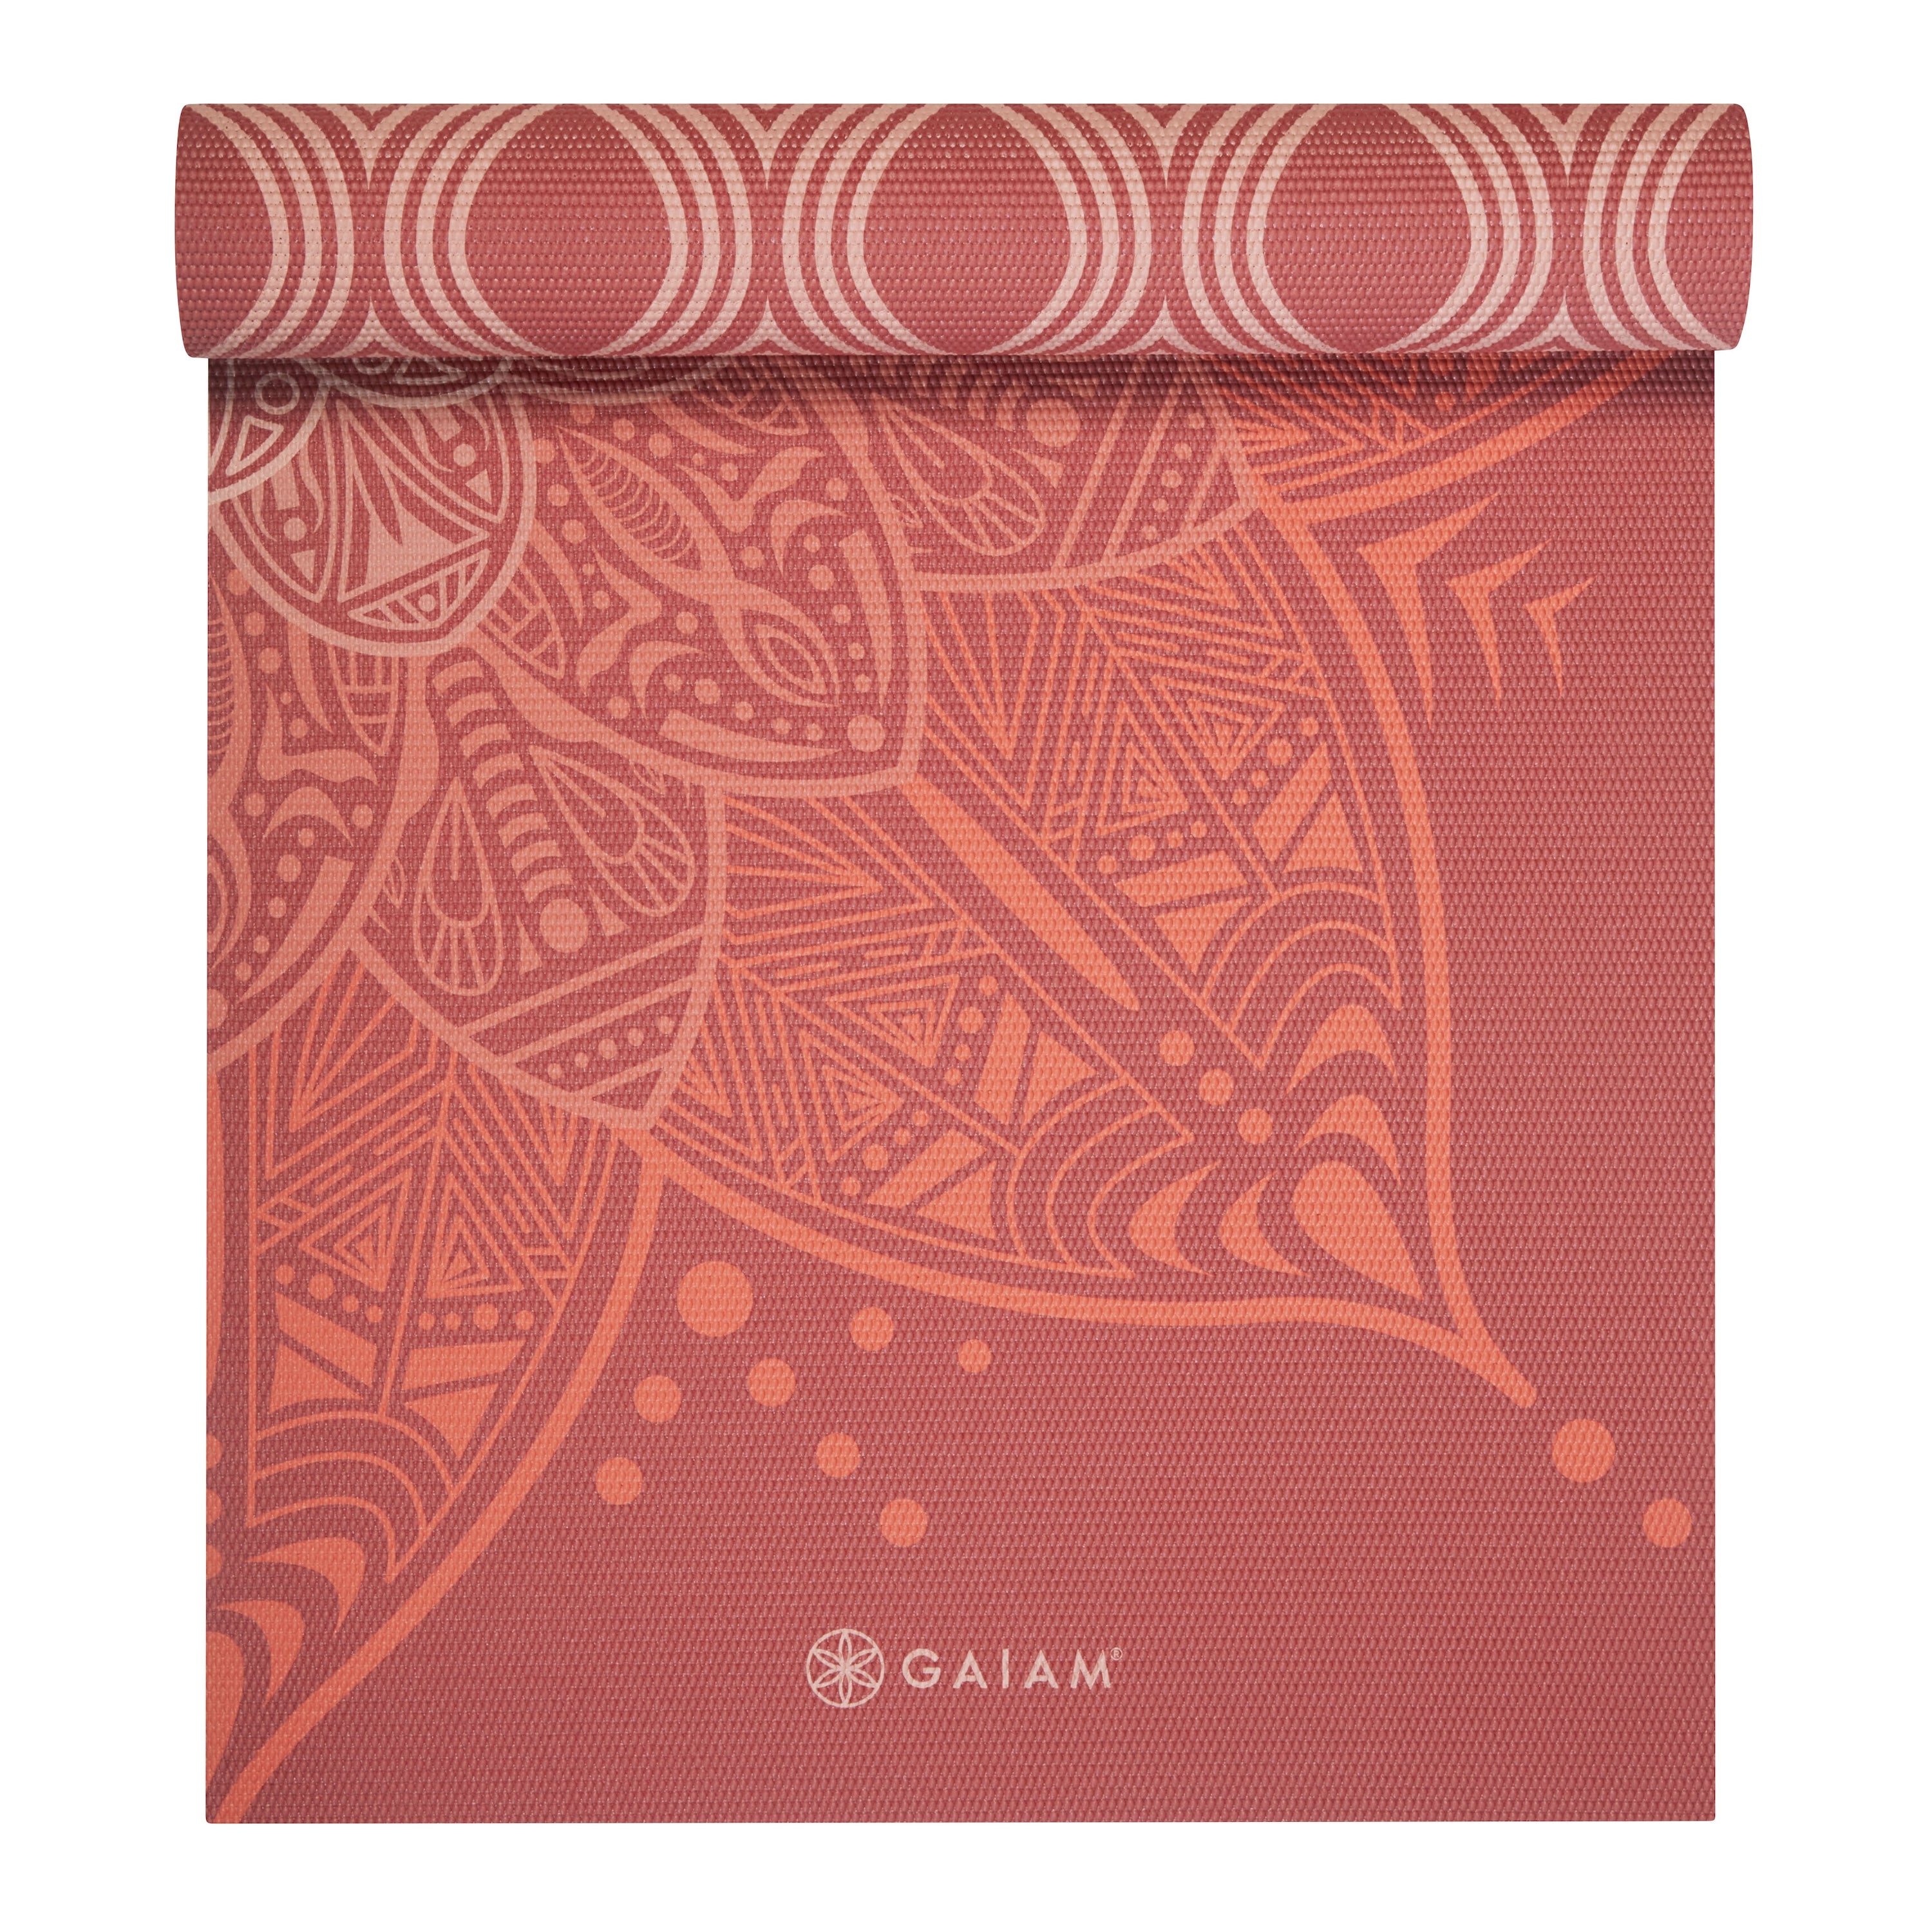 Gaiam Premium Reversible Changing Petals Yoga Mat (6mm) top rolled